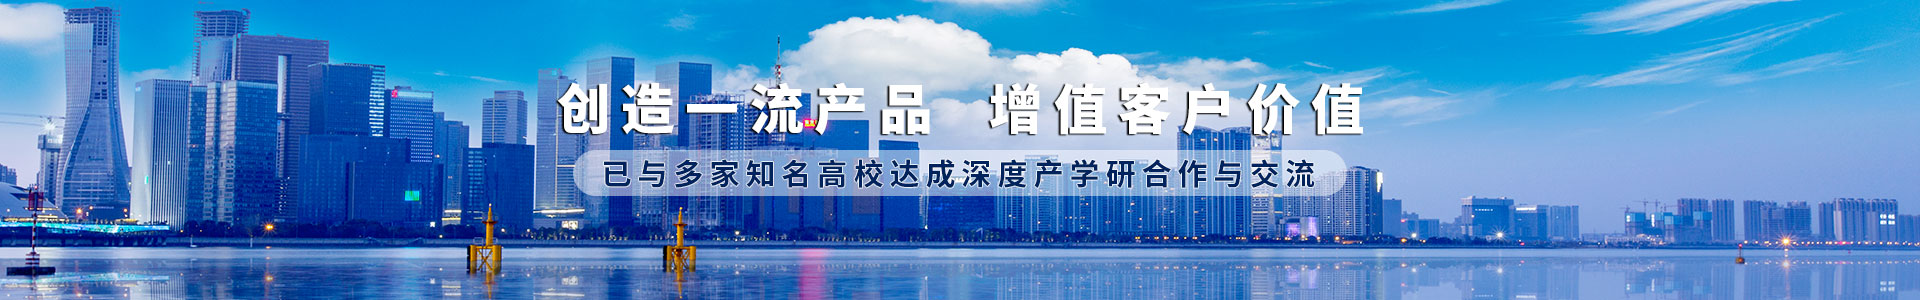 BB电子·(china)官方网站_产品9520